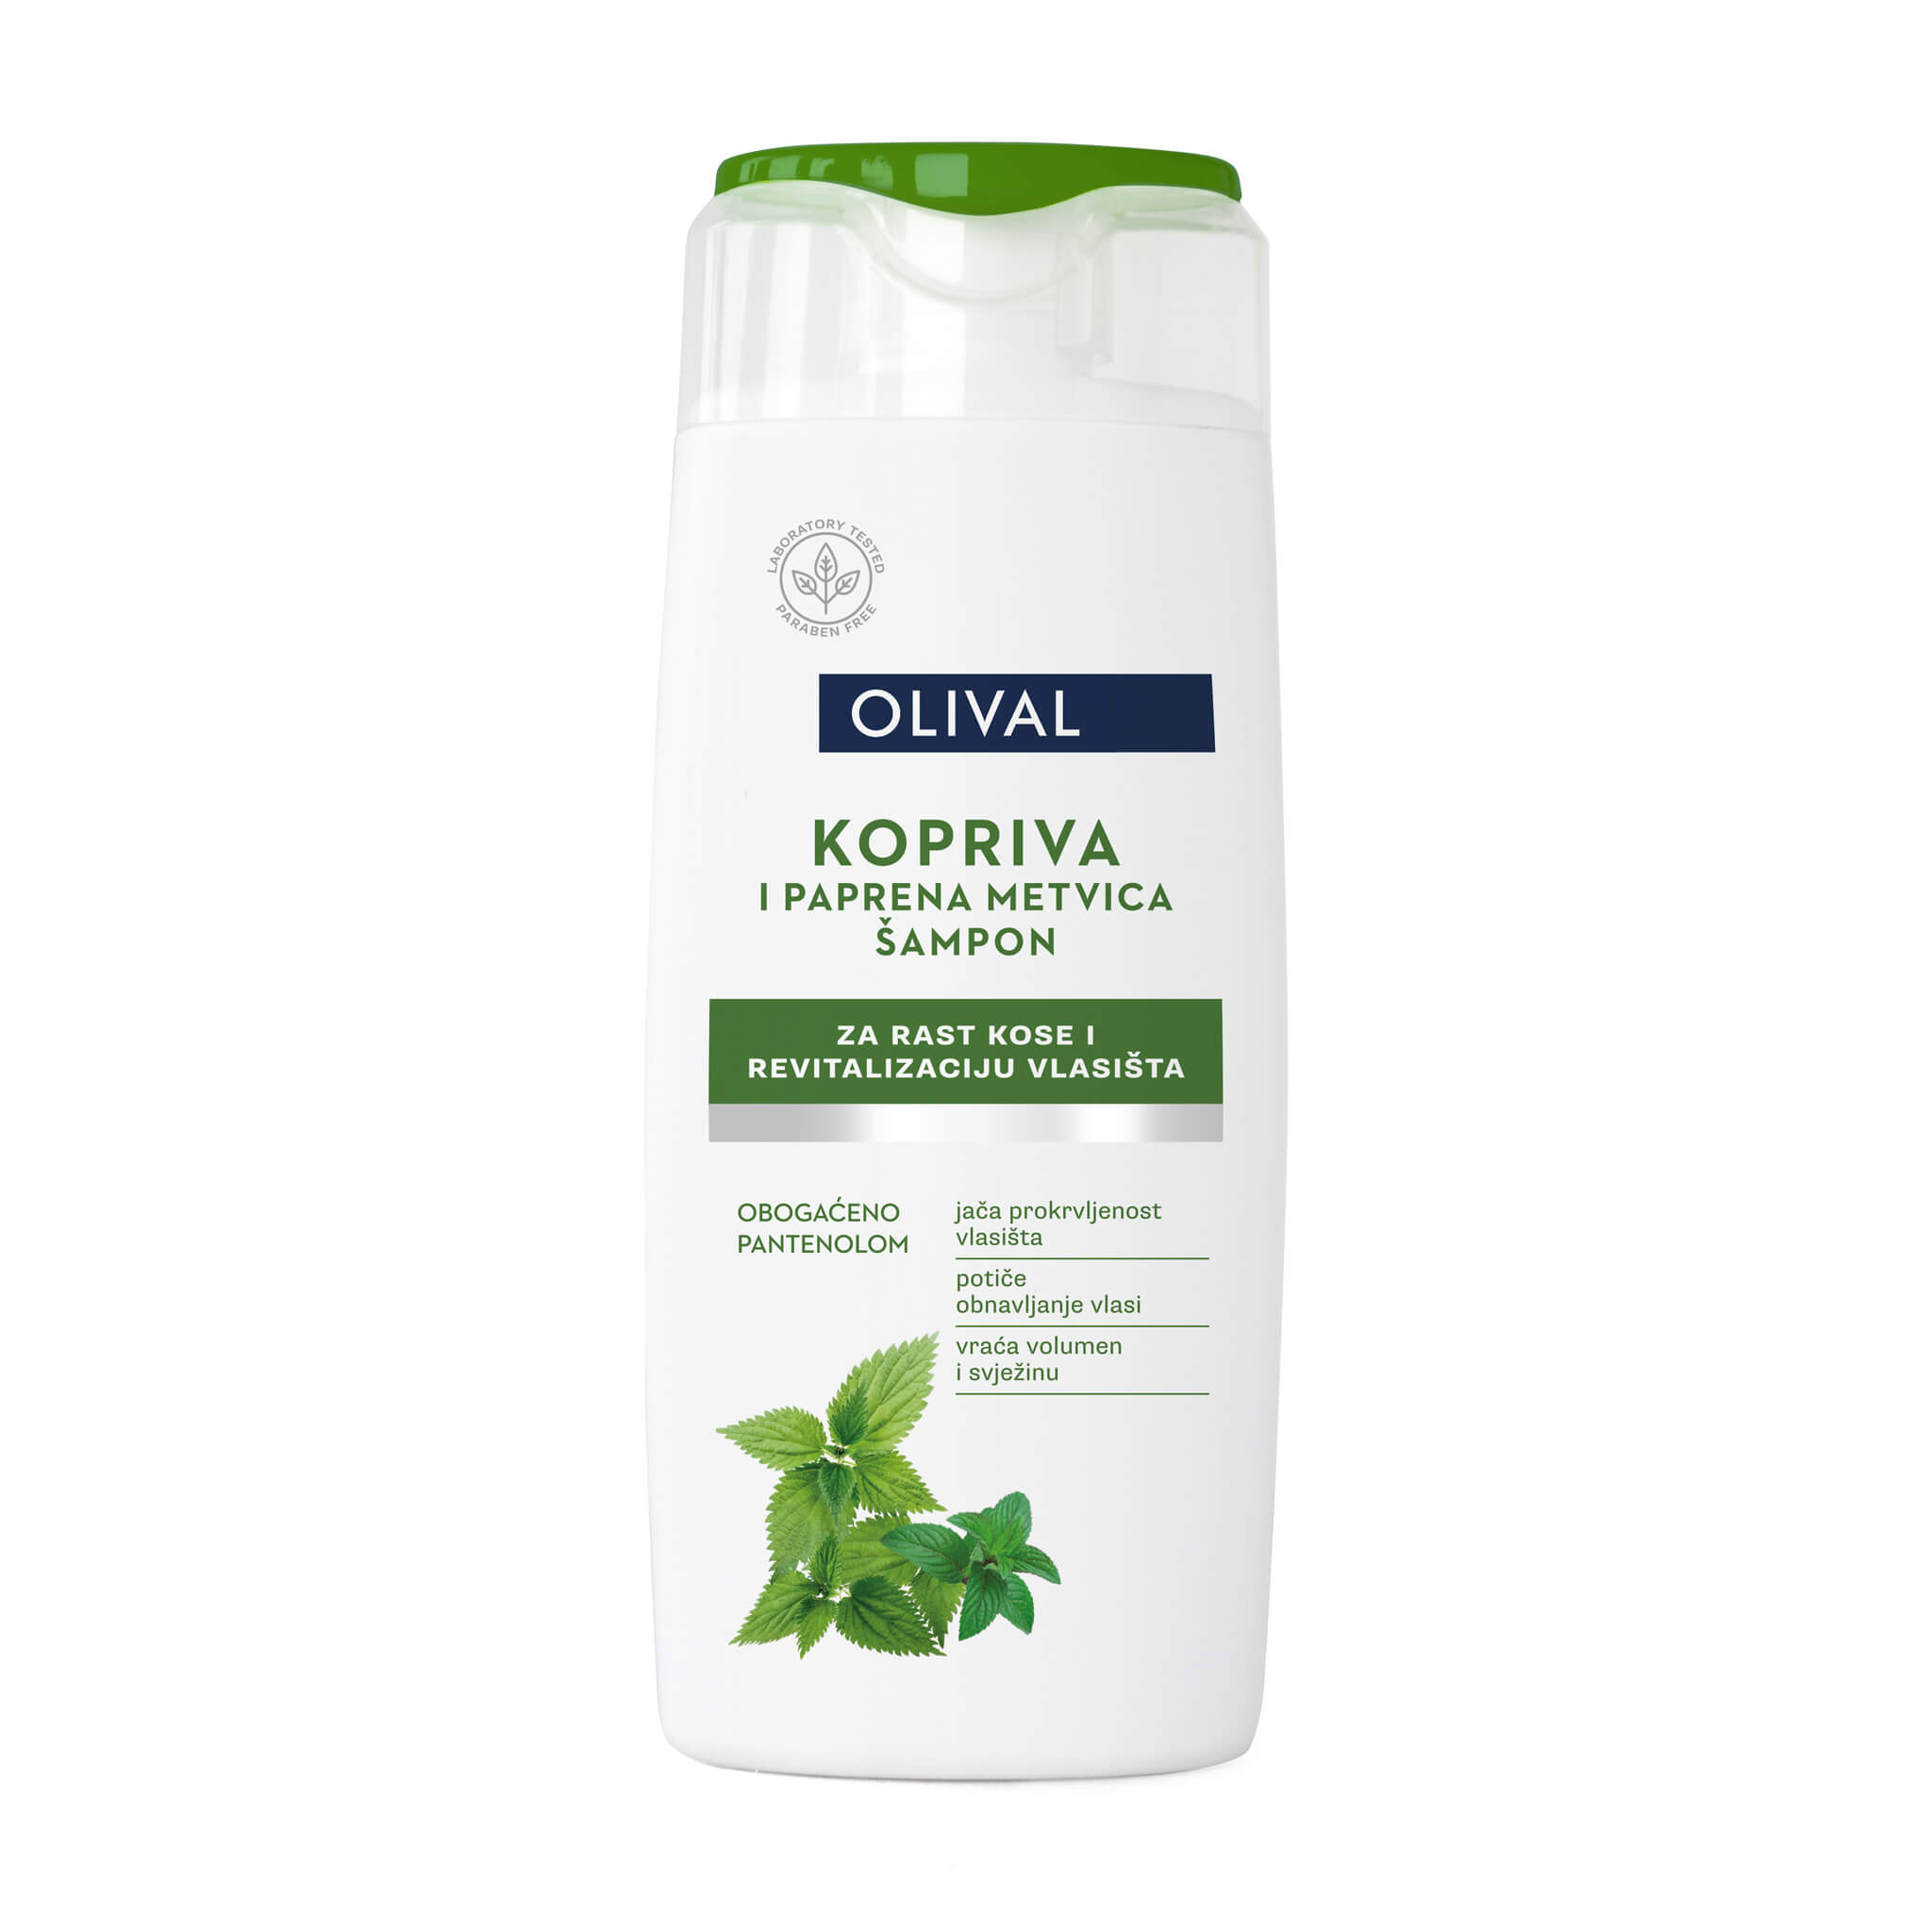 Zdrava kosa uz pomoć novih Olivalovih tretmanskih šampona